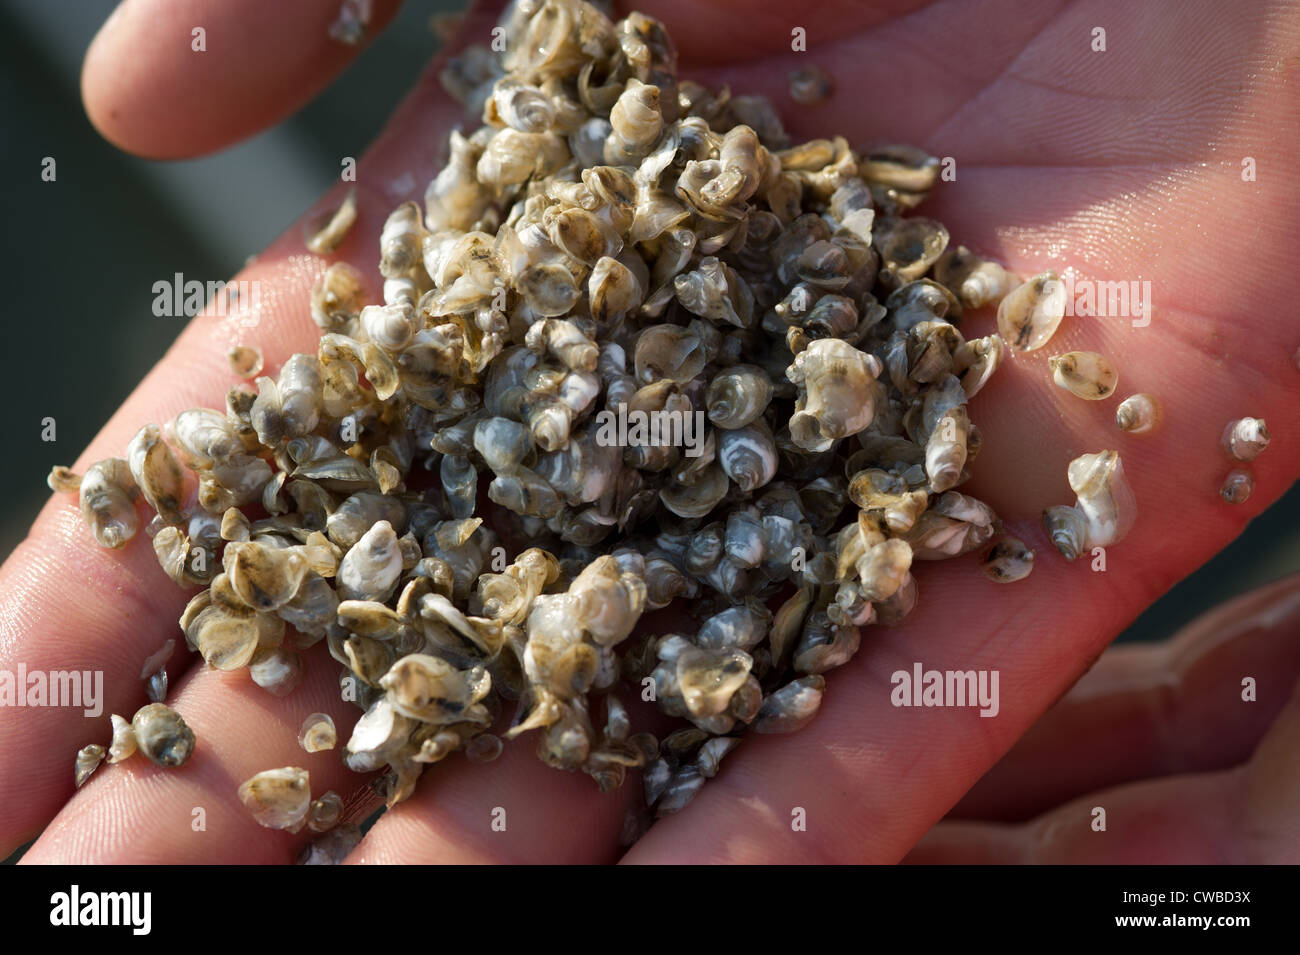 Bebé conchas de ostra en una mano, el punto de disparo ostras, Bayford VA Foto de stock